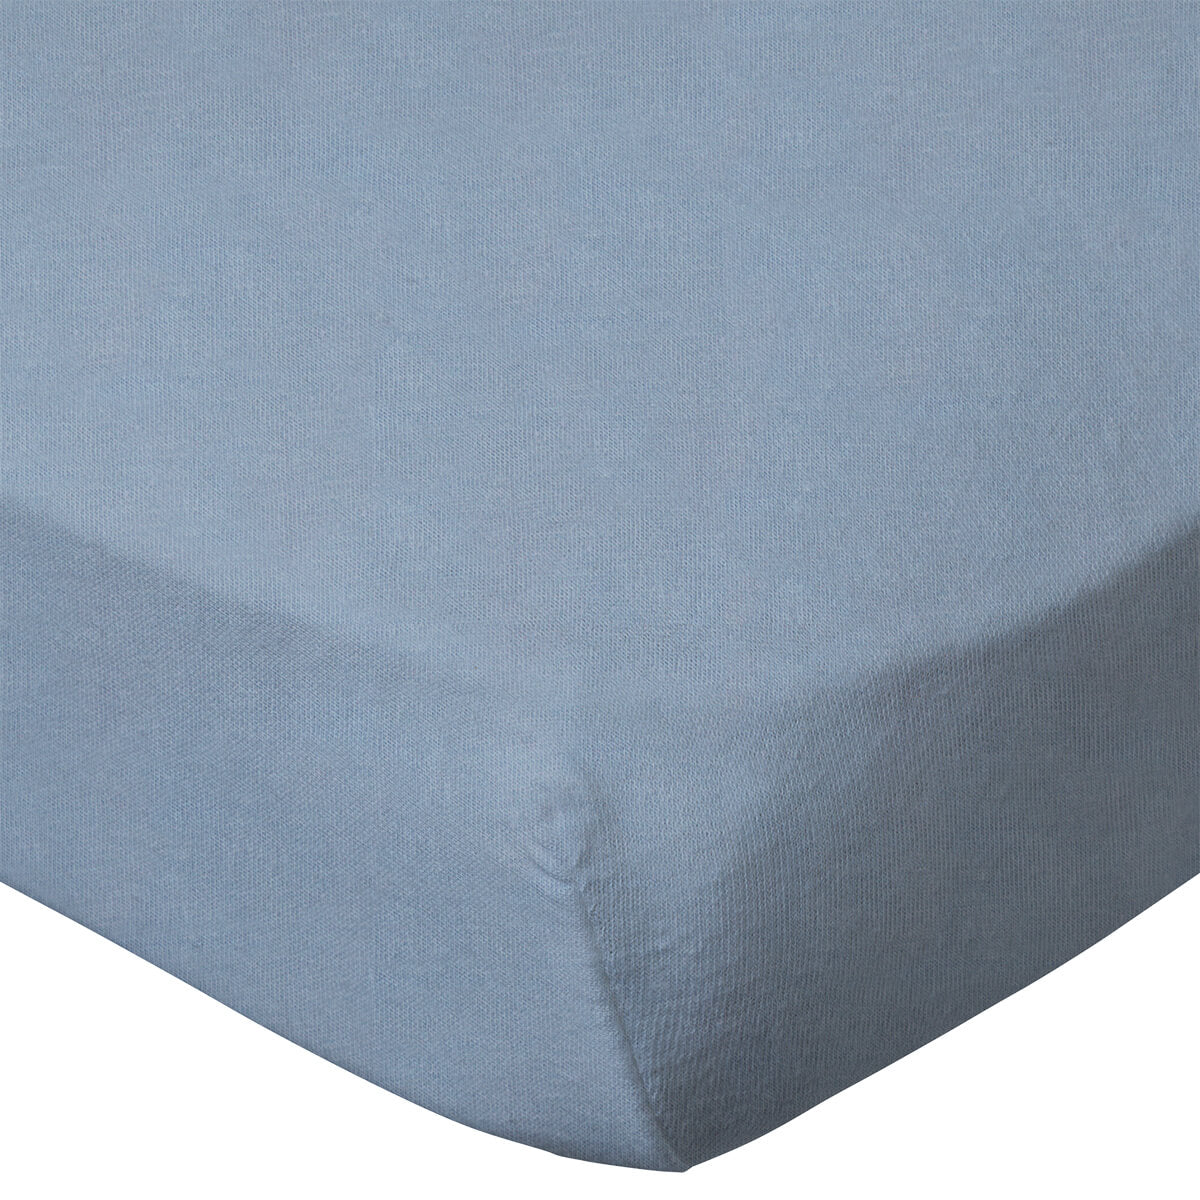 Lot de 2 draps housses bébé coton jersey bleu ciel/Pingouin 60x120 cm